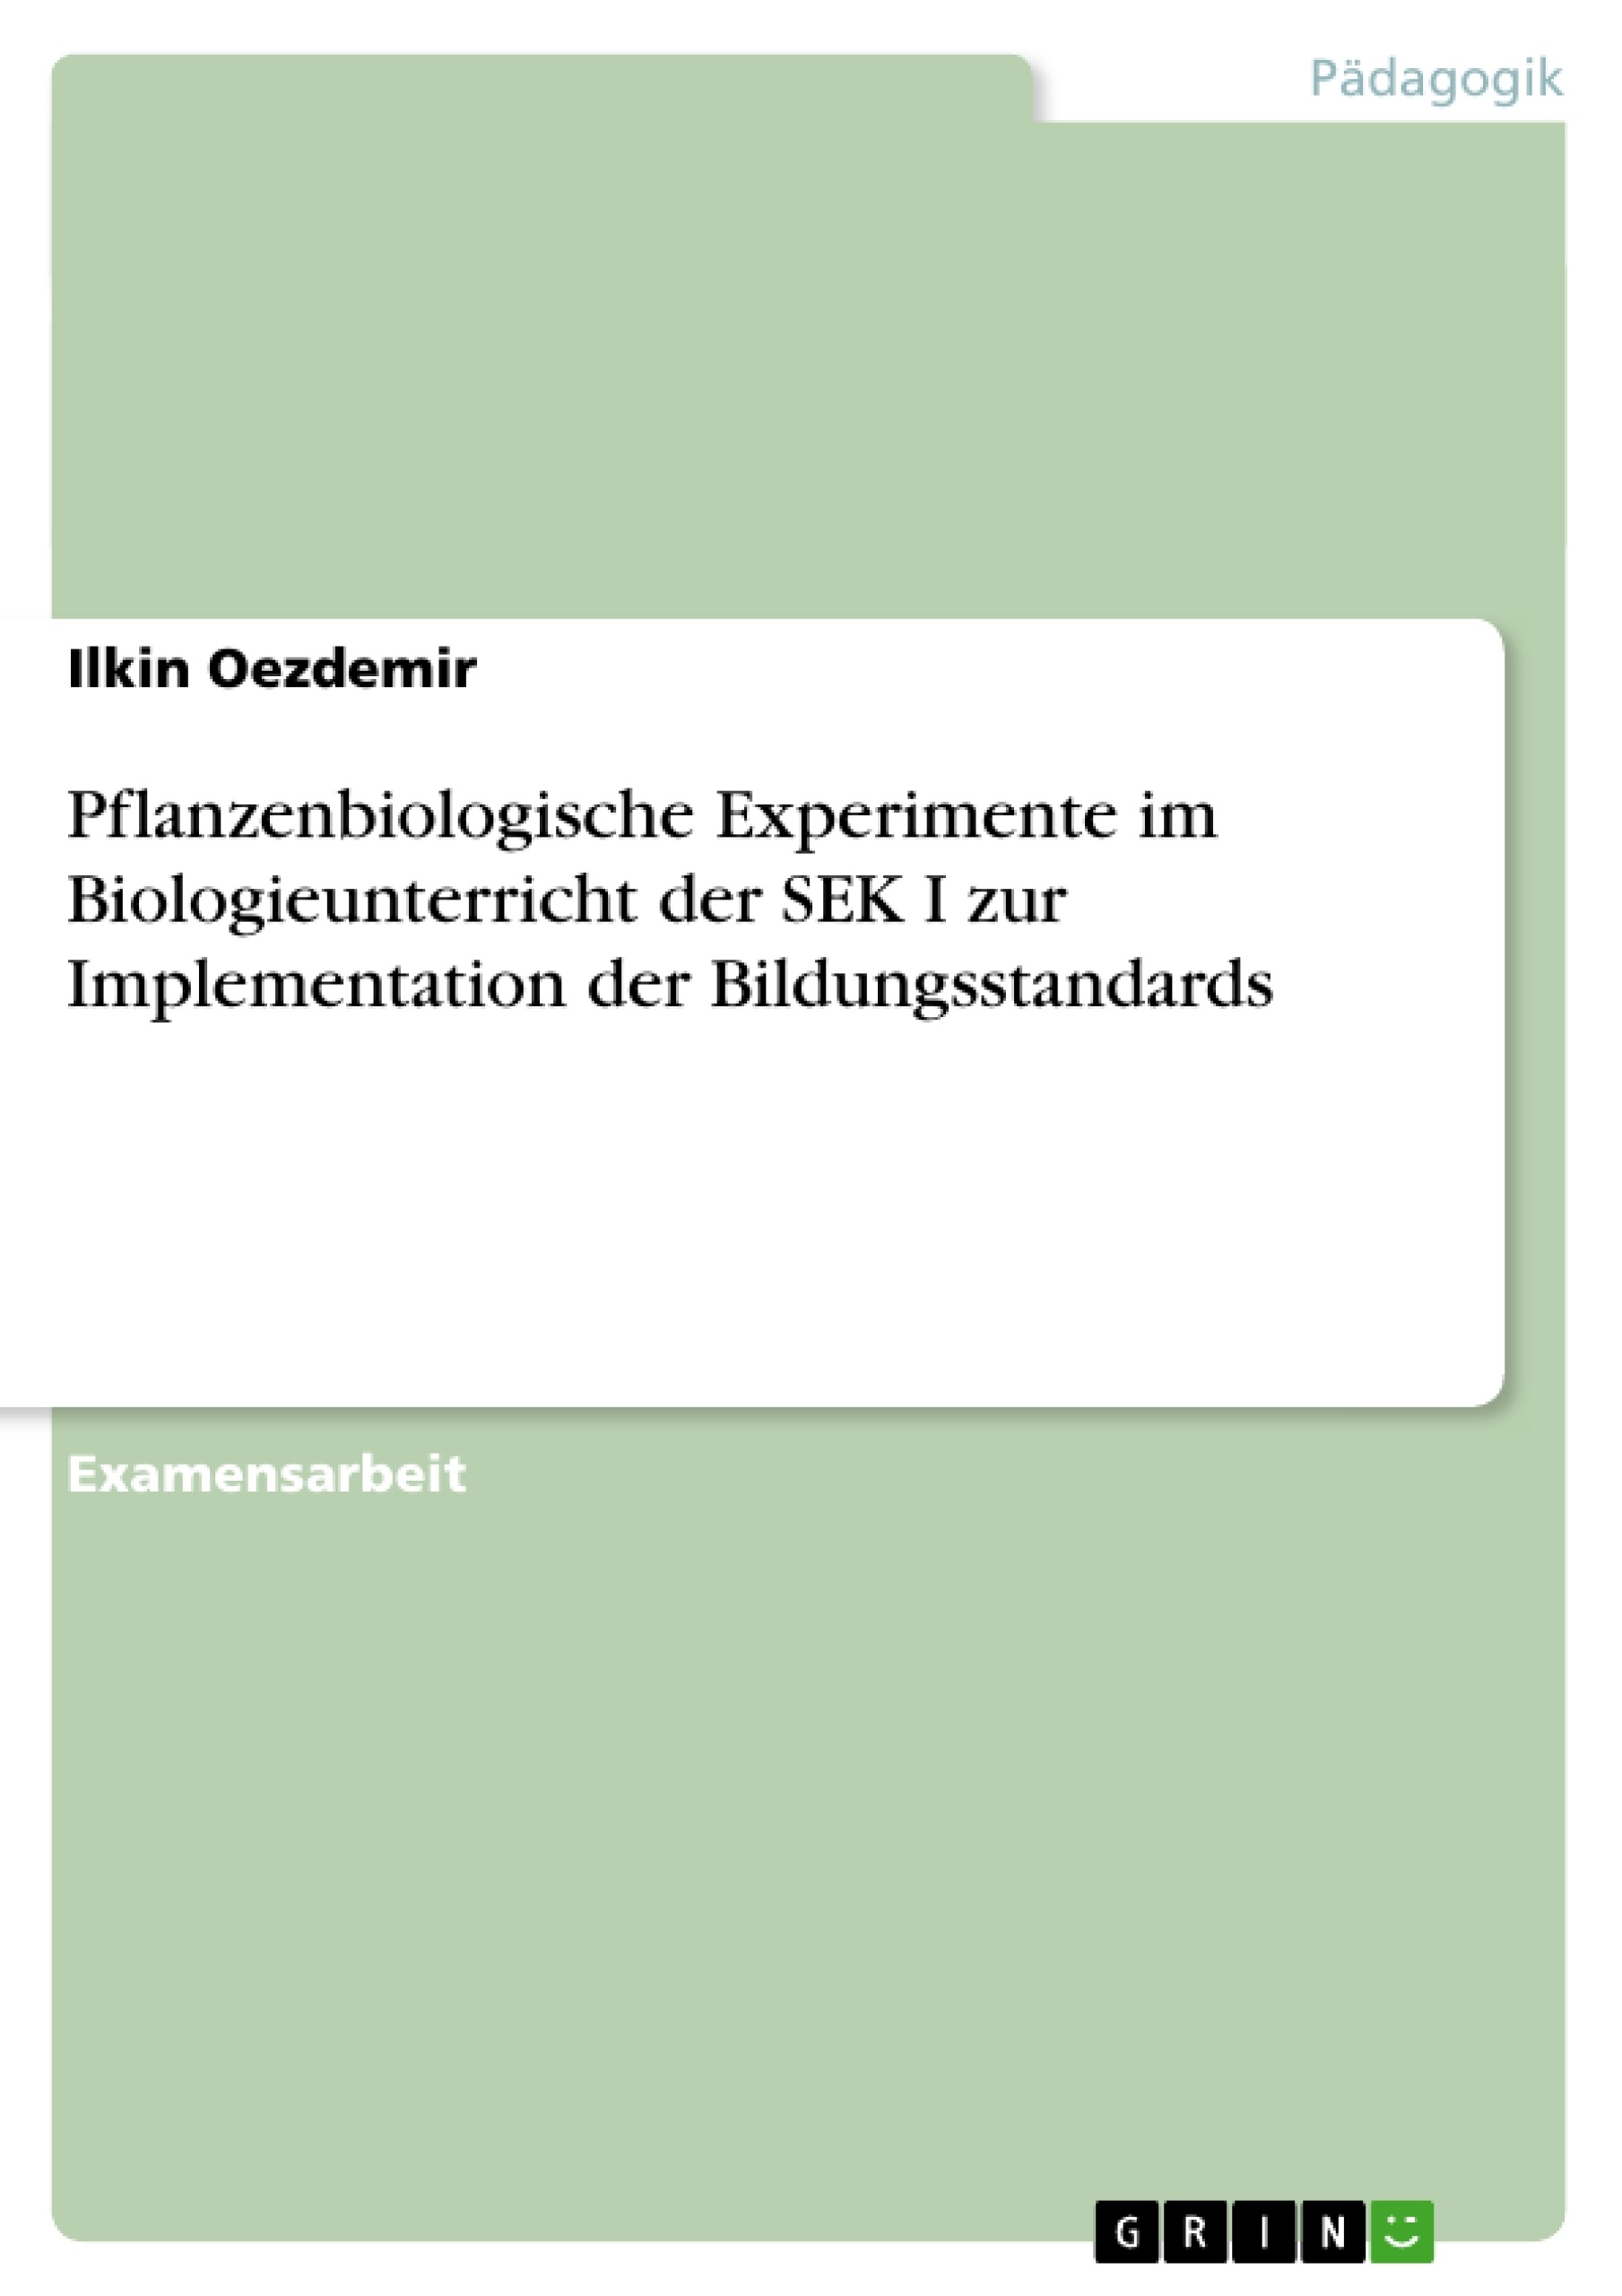 Title: Pflanzenbiologische Experimente im Biologieunterricht der SEK I zur Implementation der Bildungsstandards